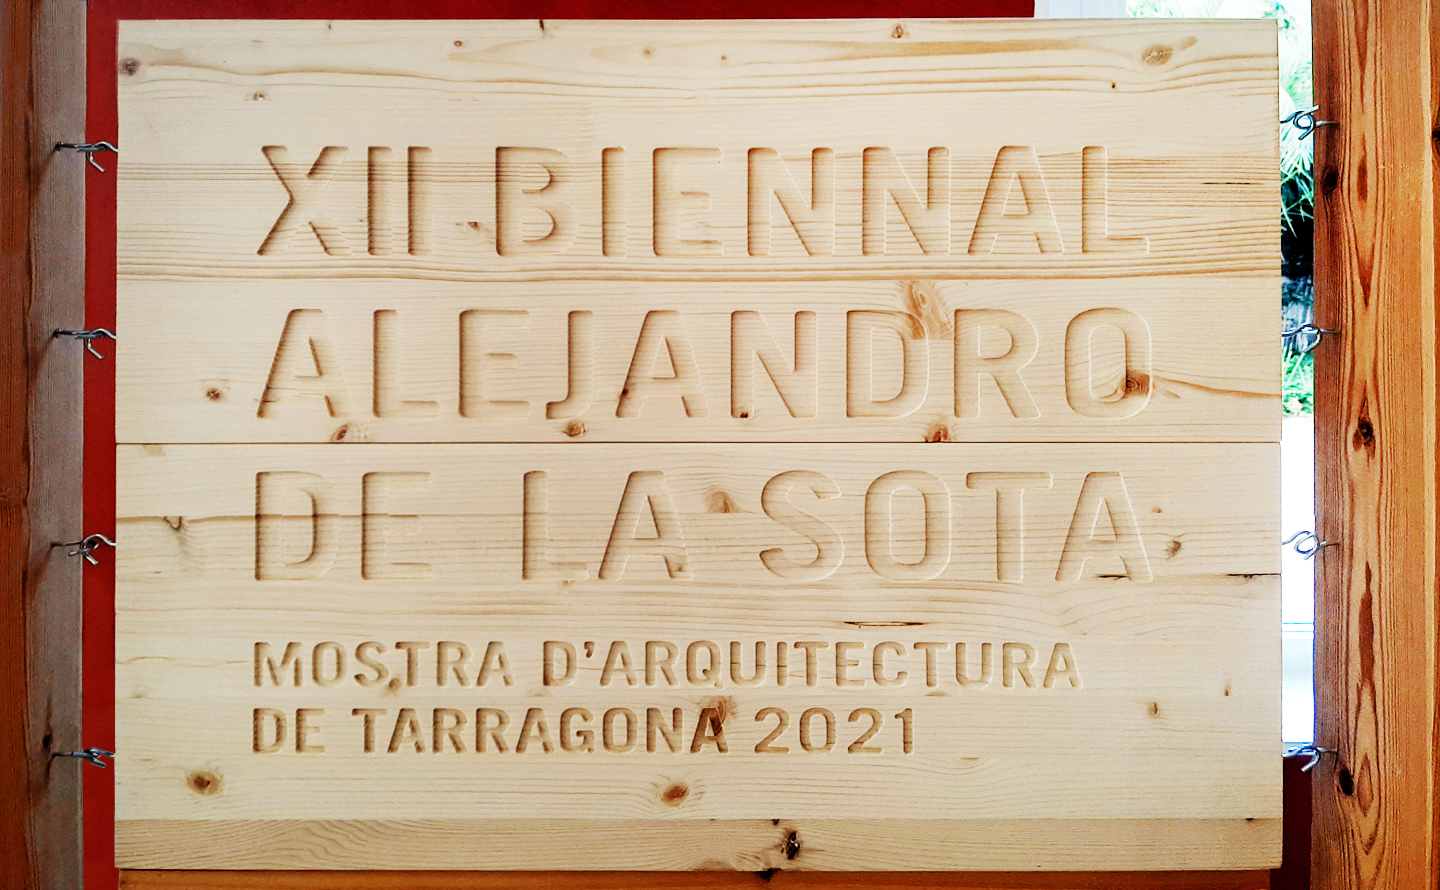 Exposició XII Biennal Alejandro de la Sota